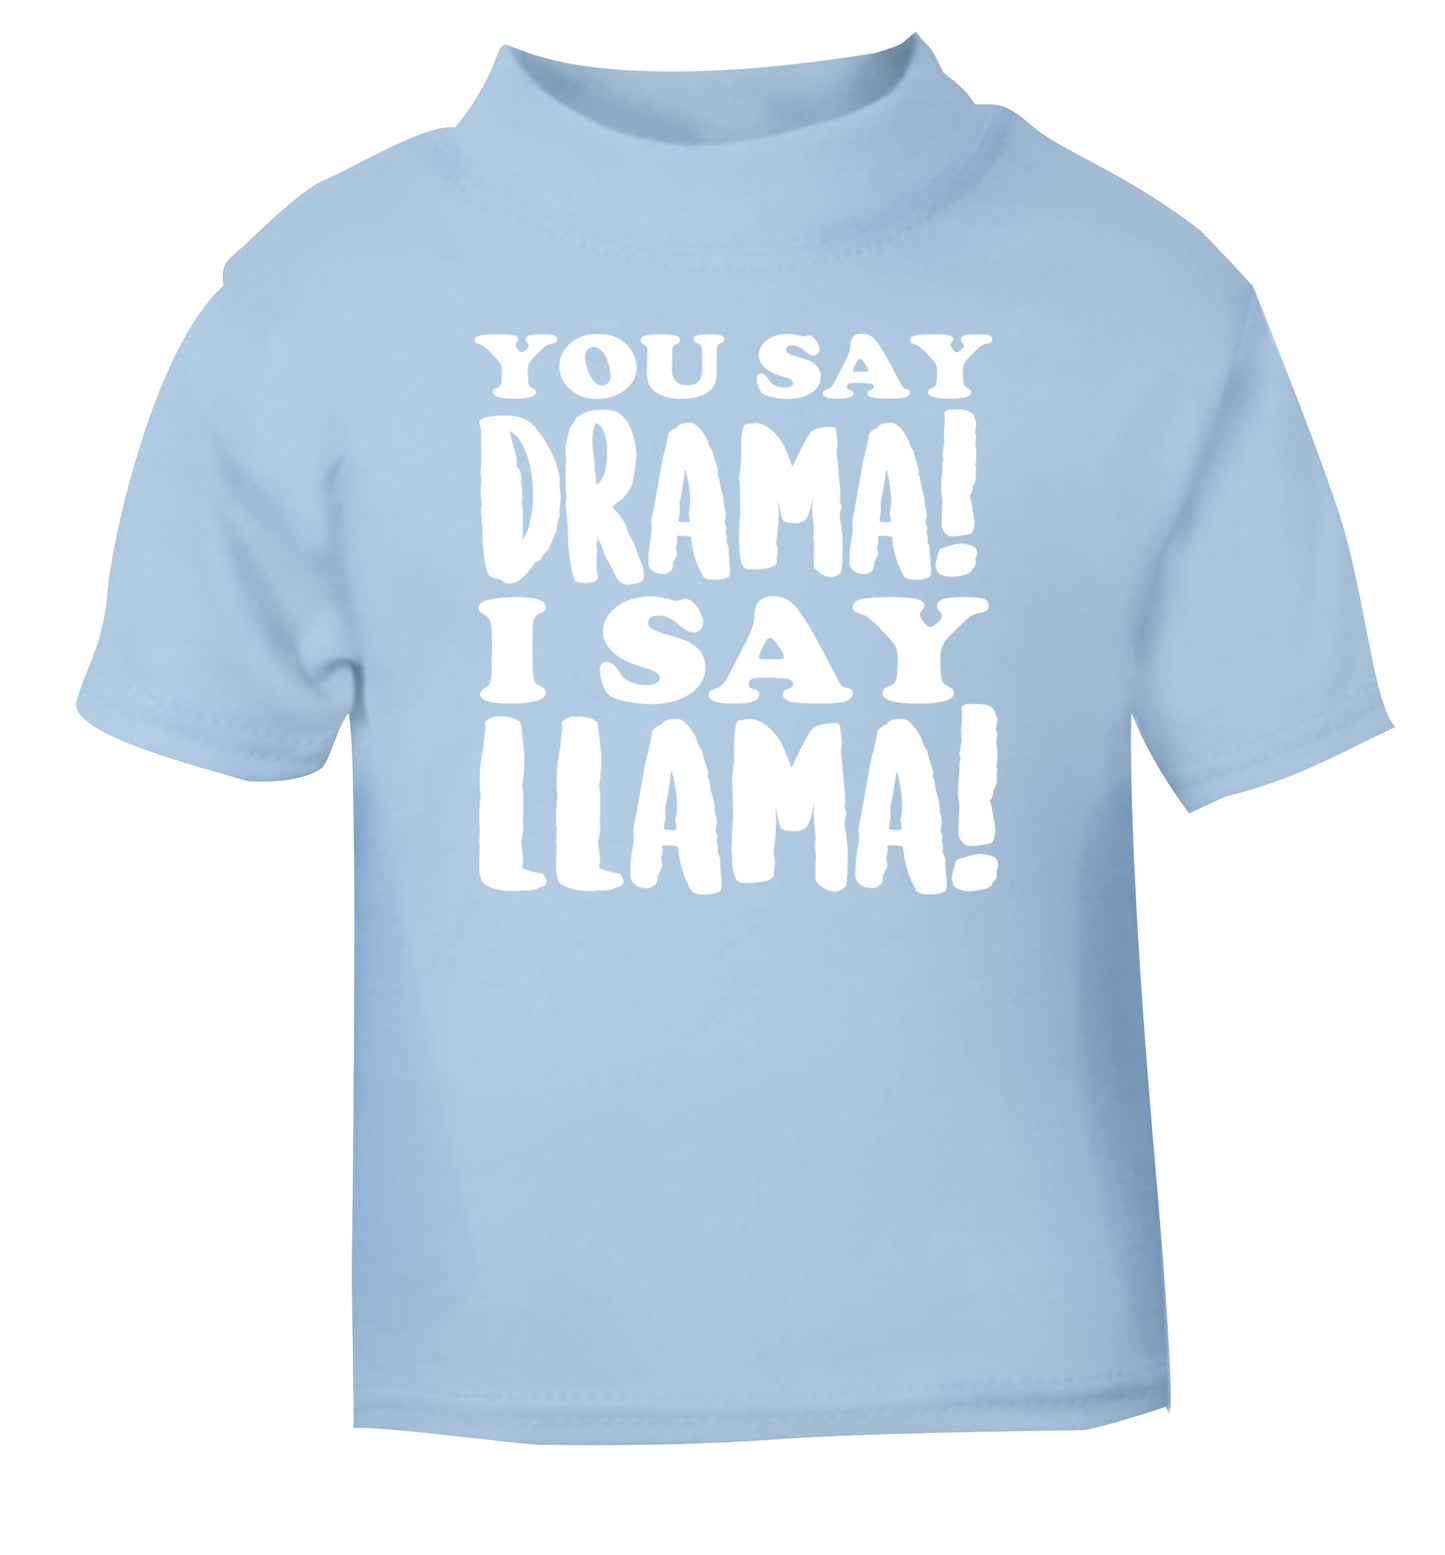 You say drama I say llama! light blue Baby Toddler Tshirt 2 Years